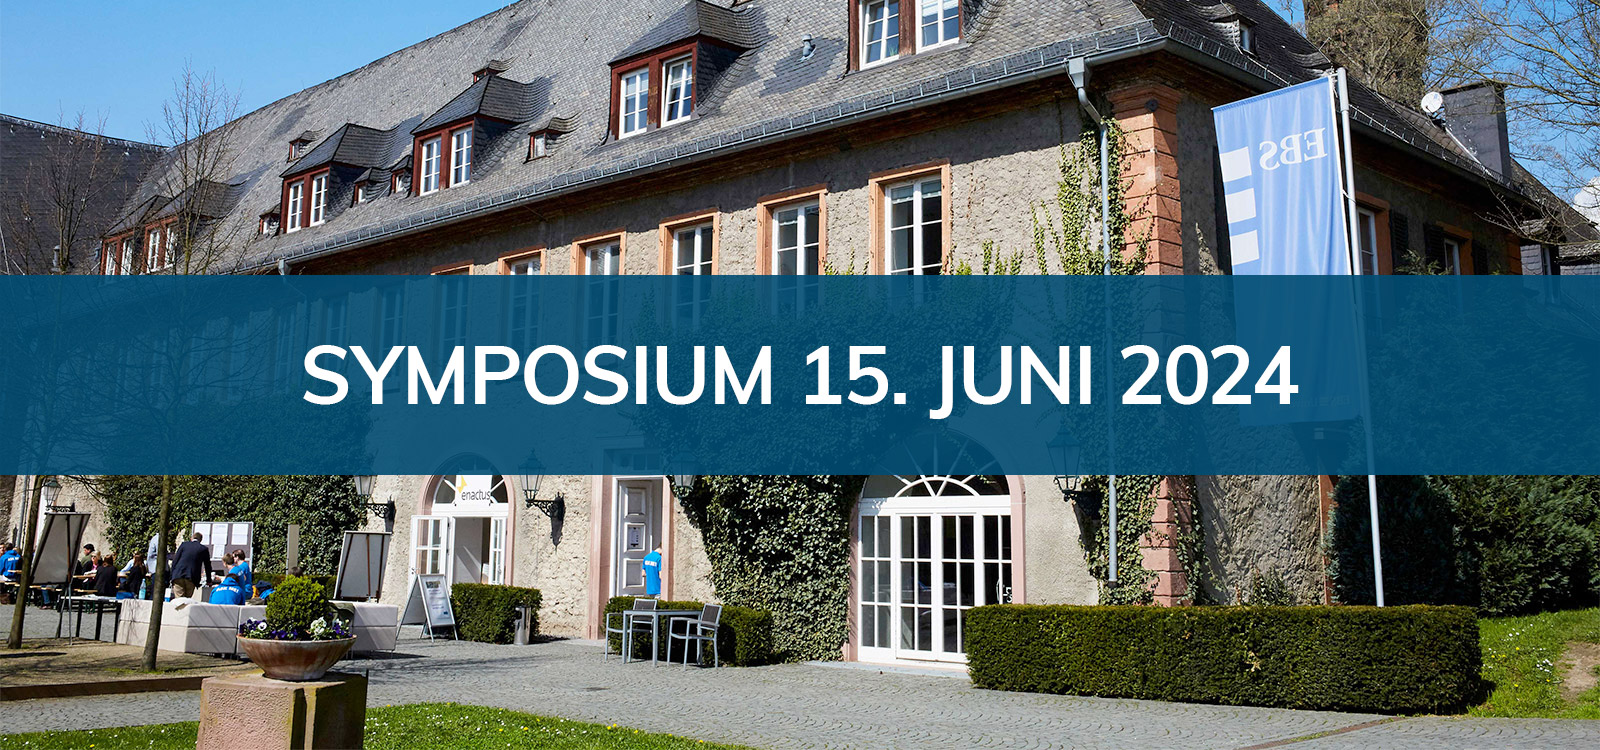 Symposium und Mitgliederversammlung am Samstag, 15. Juni 2024, an der EBS in Oestrich-Winkel